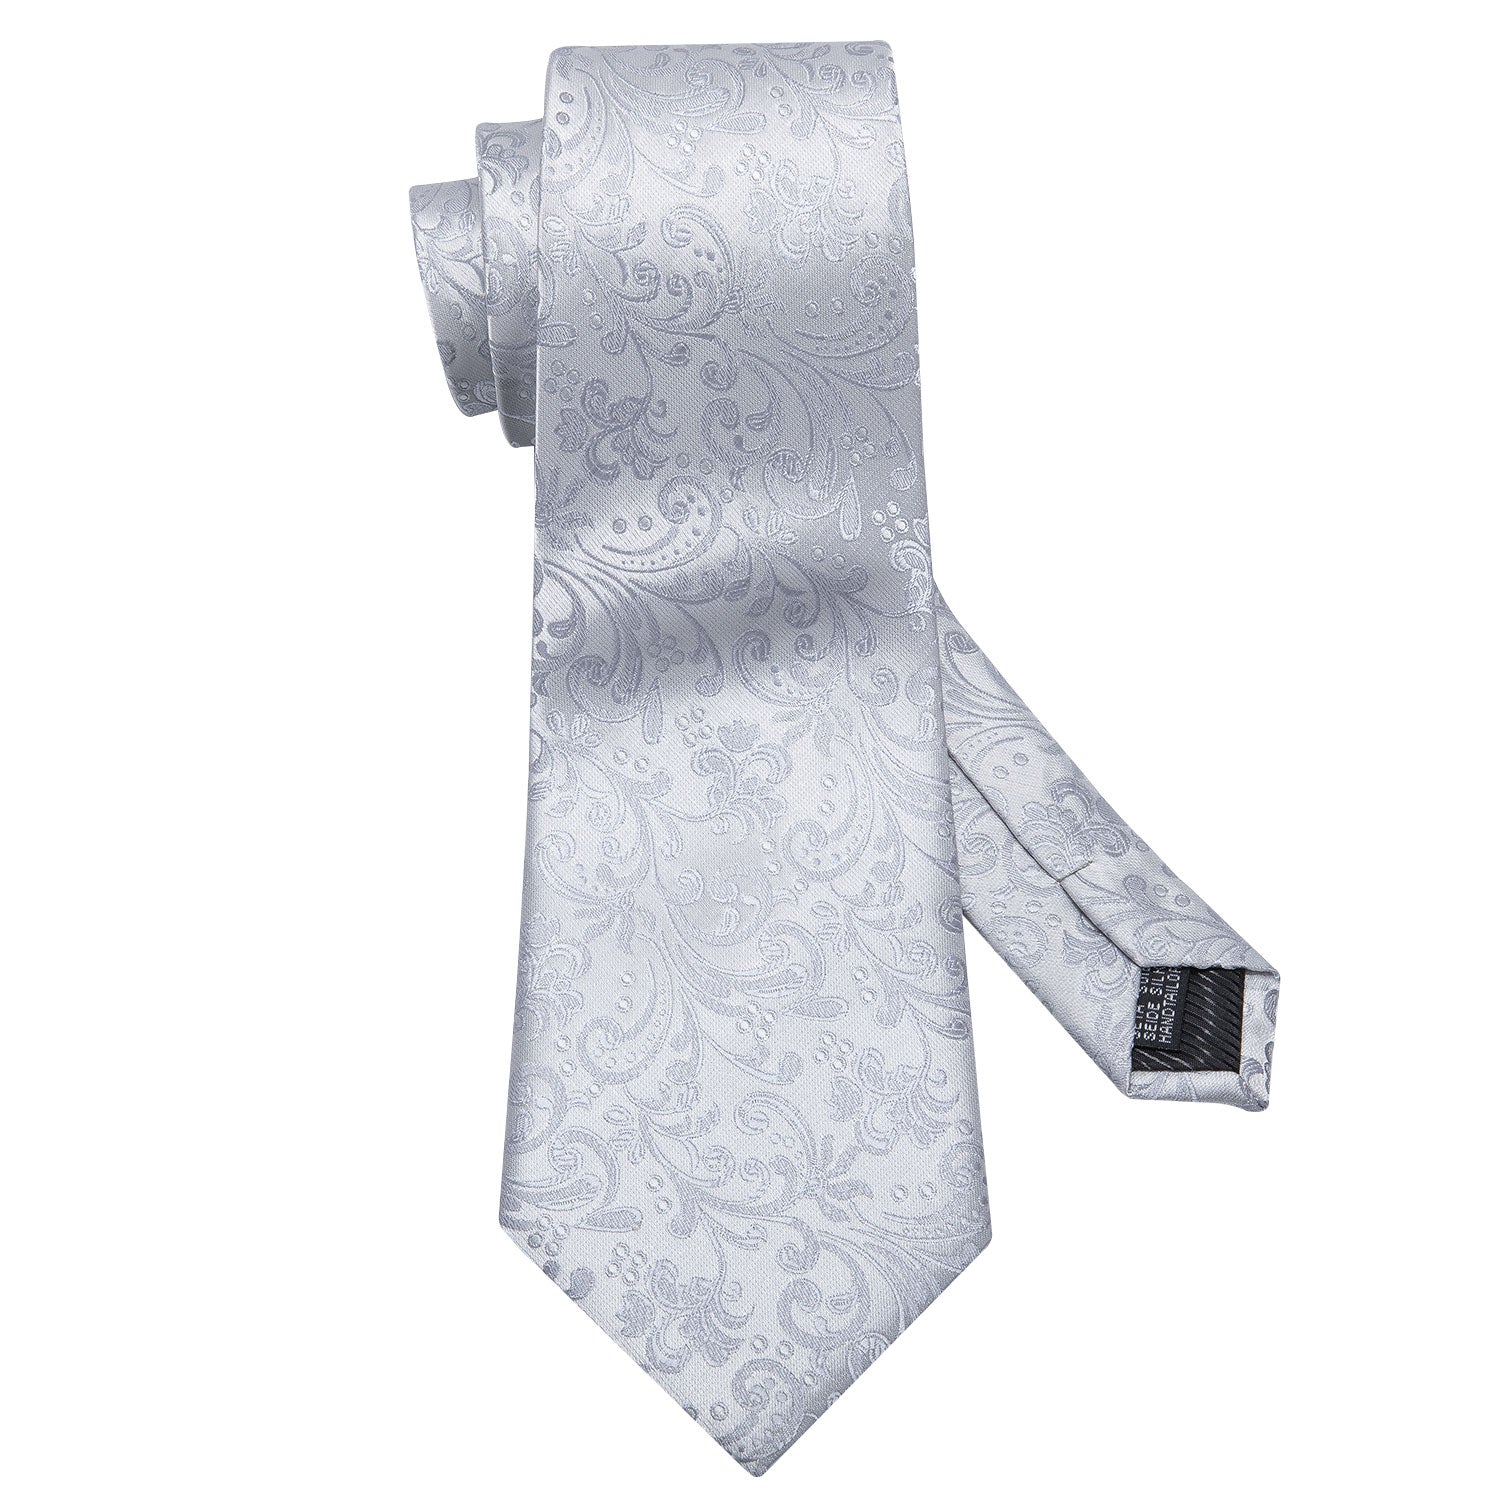 Sliver Floral Tie Pocket Square Cufflinks Set